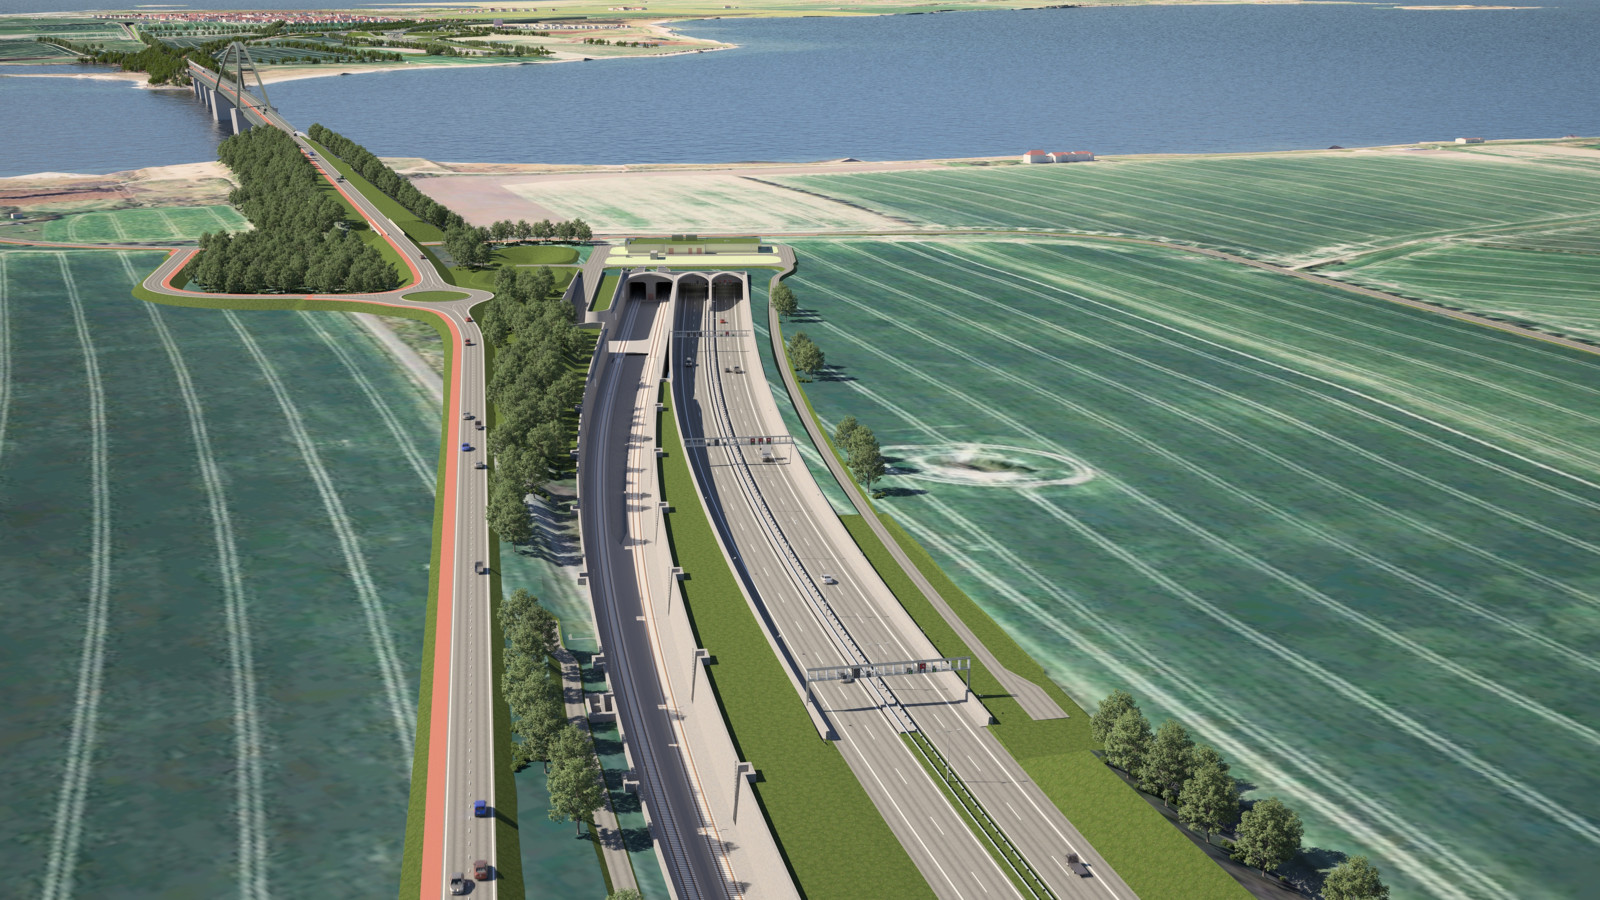 Visualisierung des Projekts: Nach jahrelanger Planung startet der 88 Kilometer lange Aus- und Neubau der Bahnstrecke von Puttgarden bis Lübeck als Anbindung für den dänischen Belttunnel in der Ostsee. 